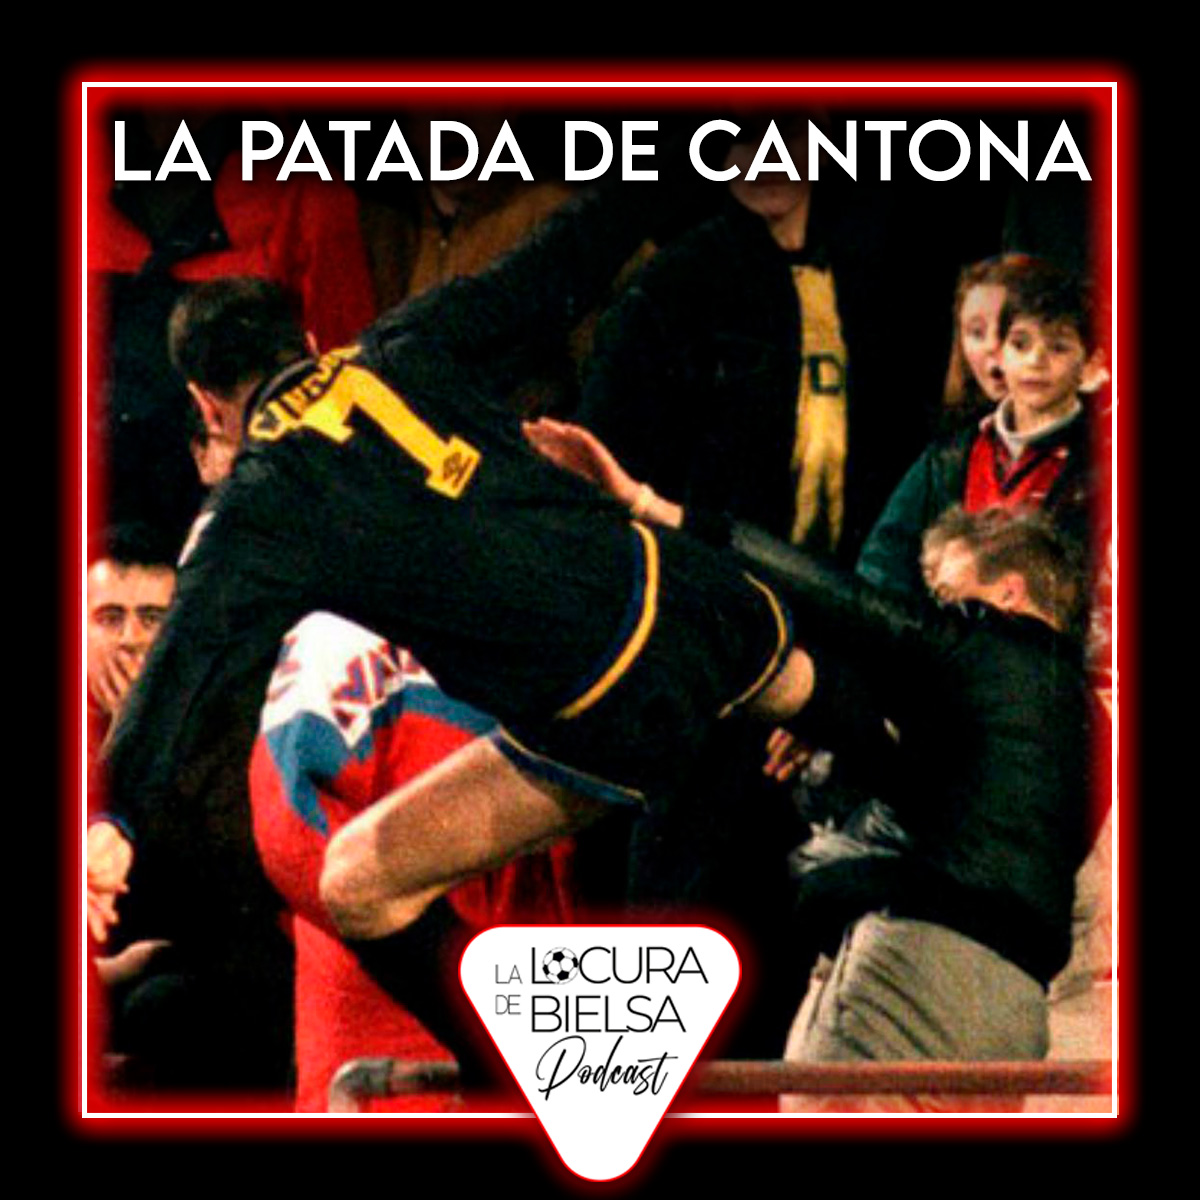 La Patada de Cantona Locura de Bielsa Podcast futbol